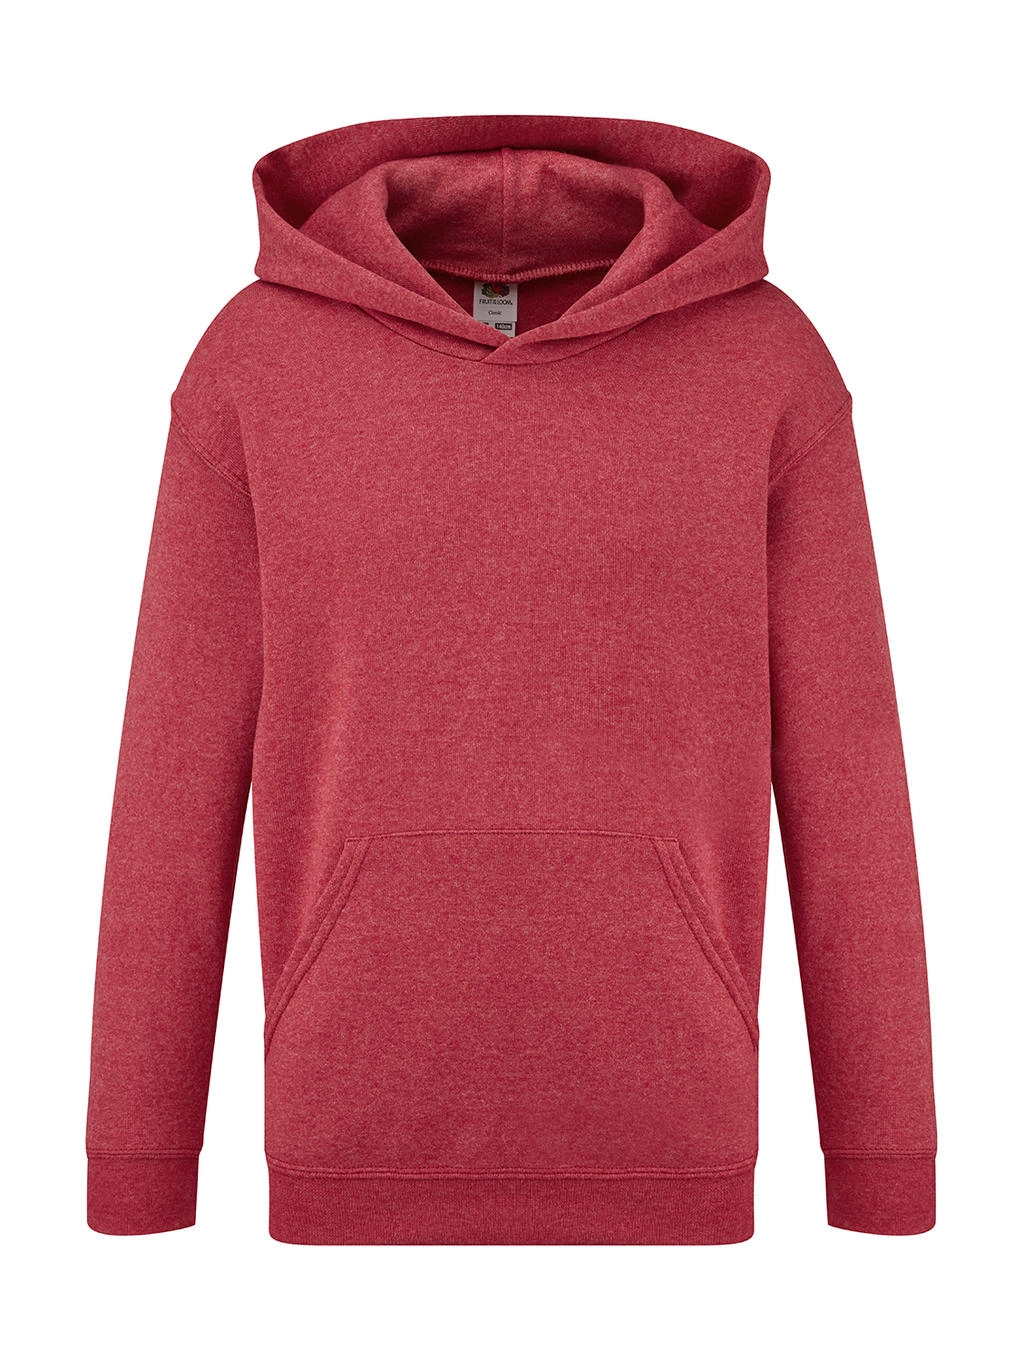 Kids` Classic Hooded Sweat zum Besticken und Bedrucken in der Farbe Heather Red mit Ihren Logo, Schriftzug oder Motiv.